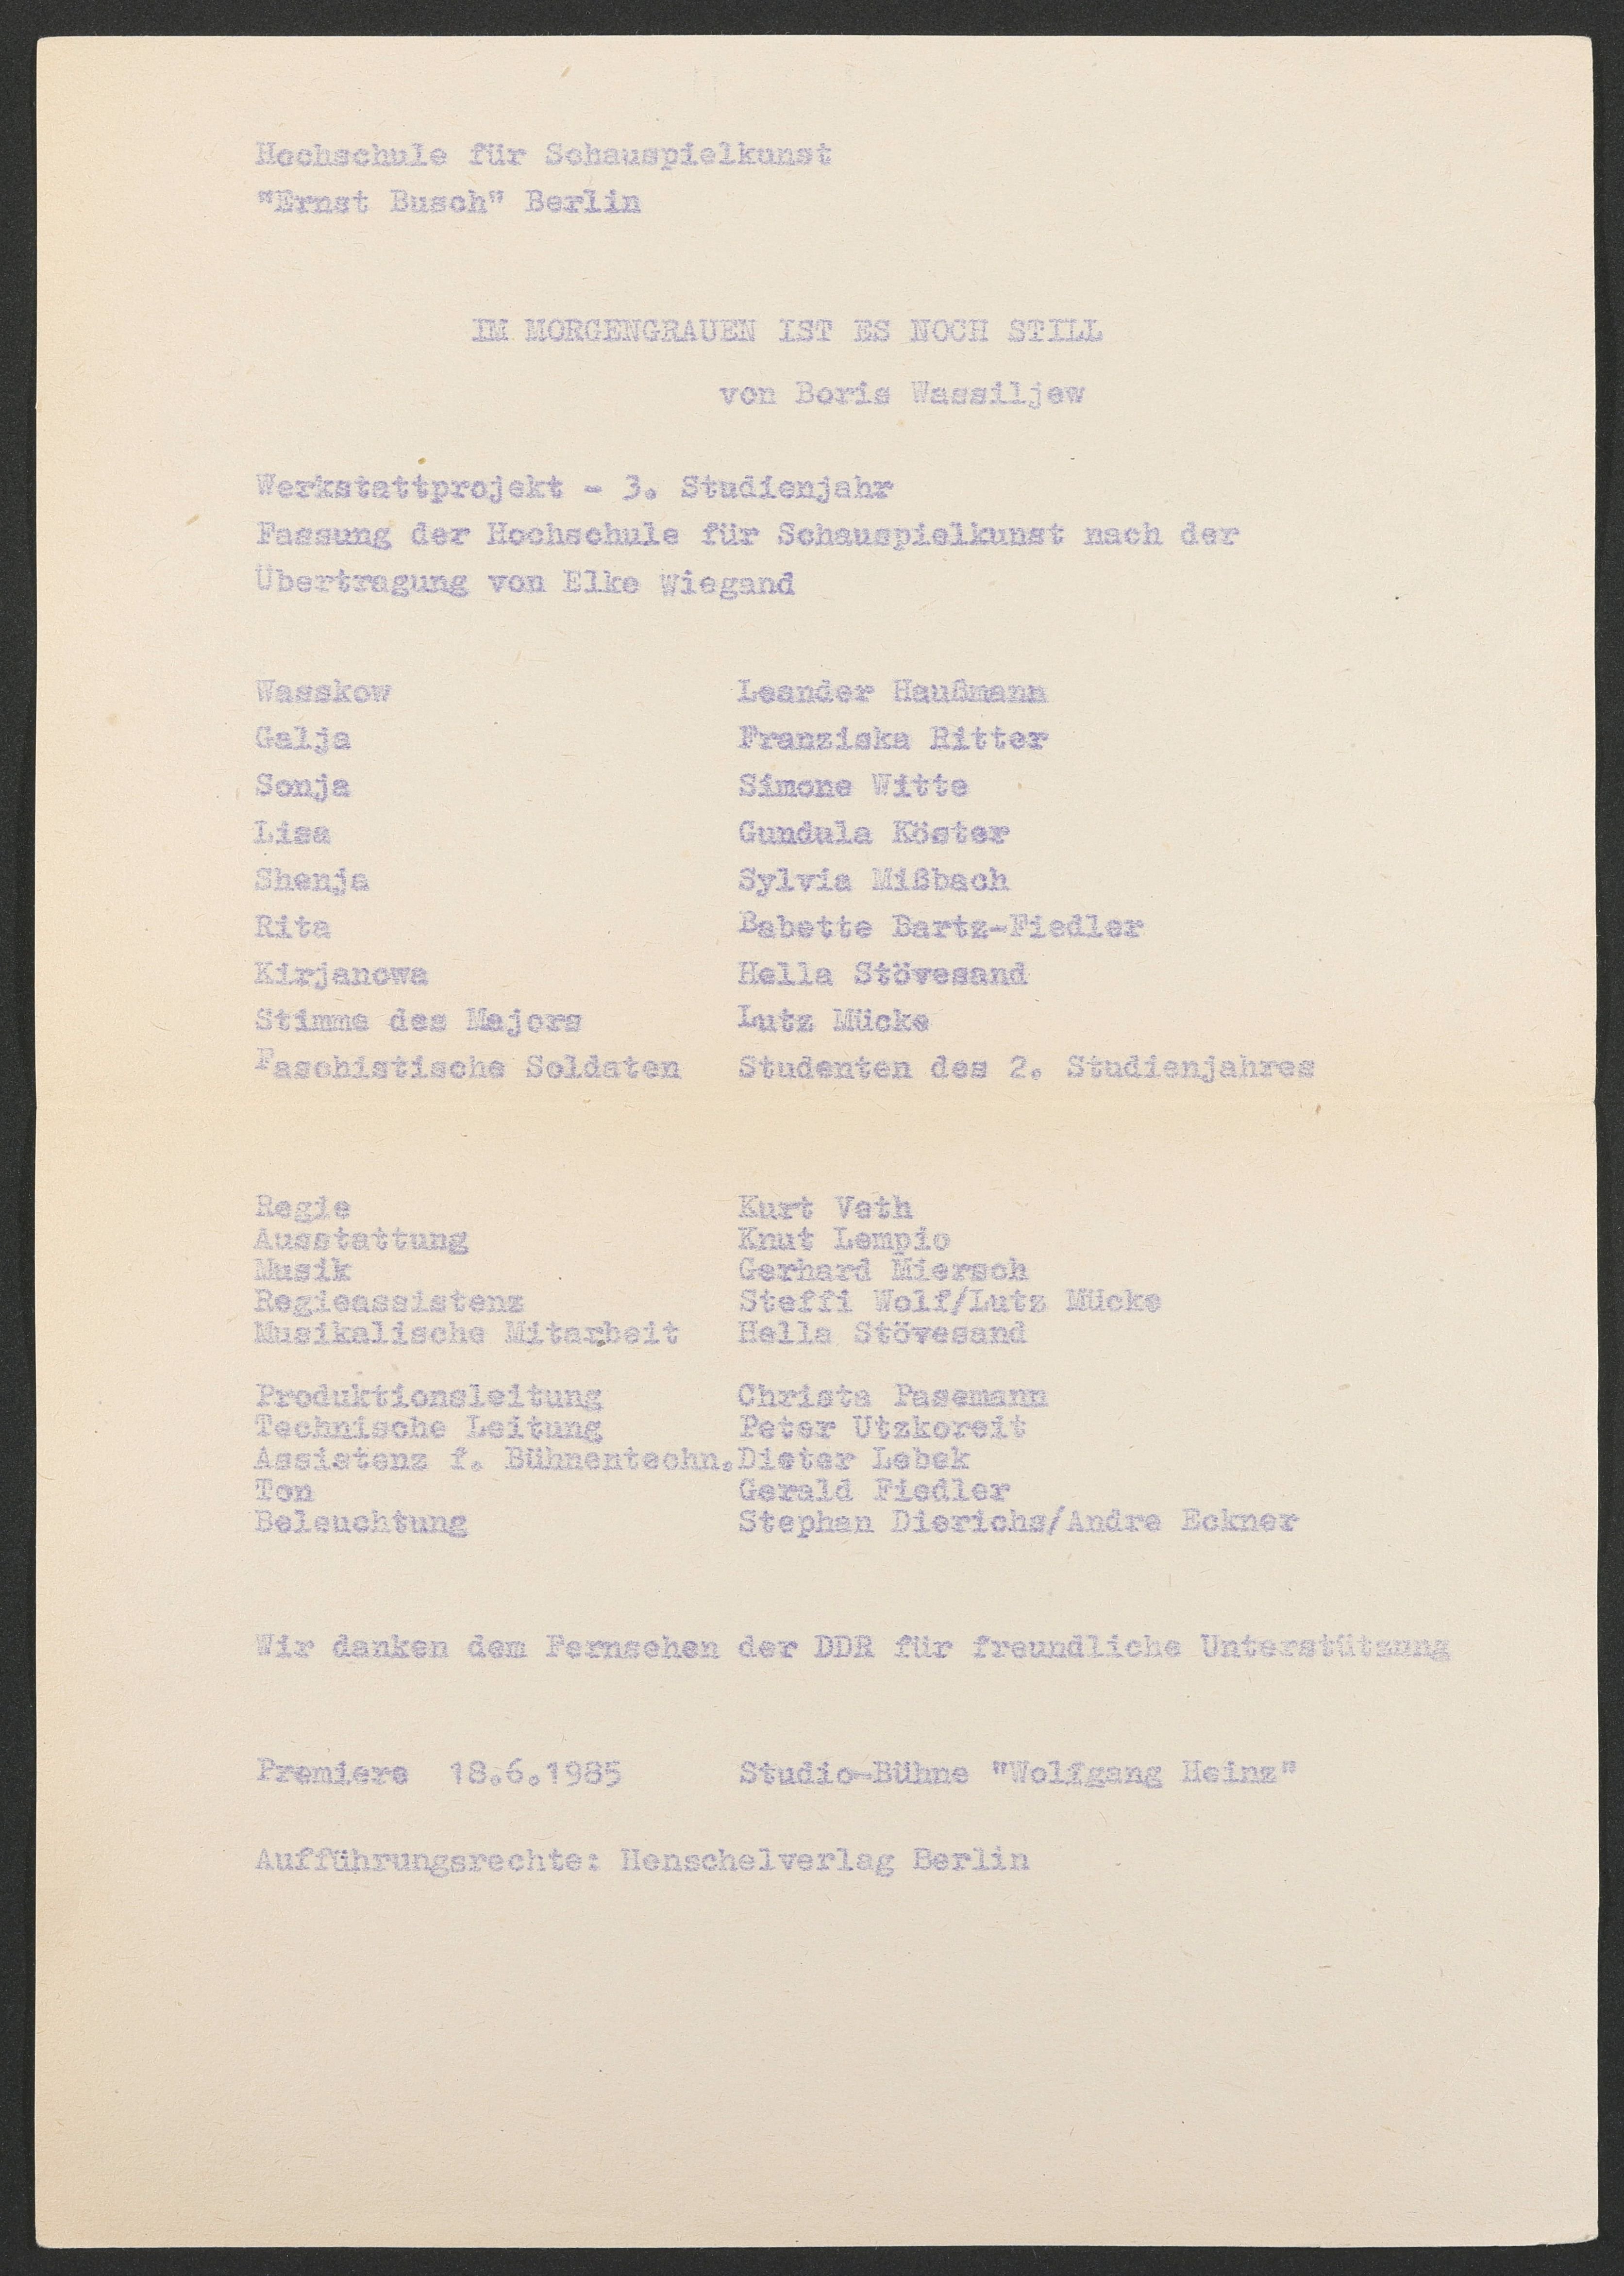 Programmzettel zu "Im Morgengrauen ist es noch still" an der Studiobühne "Wolfgang Heinz" 1985 (Hochschule für Schauspielkunst Ernst Busch Berlin RR-F)